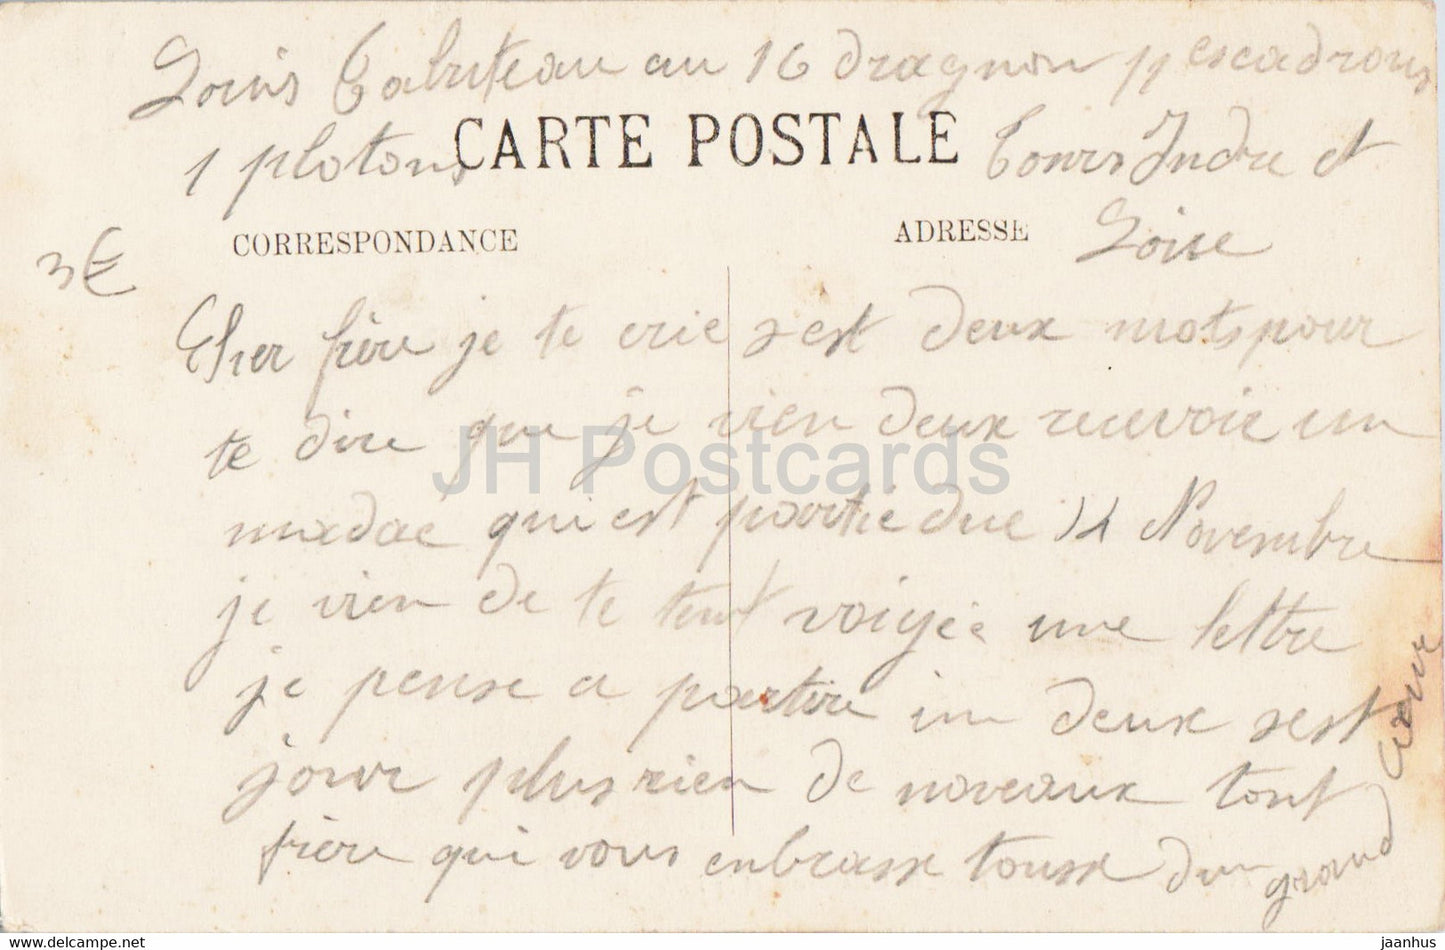 Tours - Le Grand Pont - la Cathédrale et la Ville - pont - 84 - carte postale ancienne - France - occasion